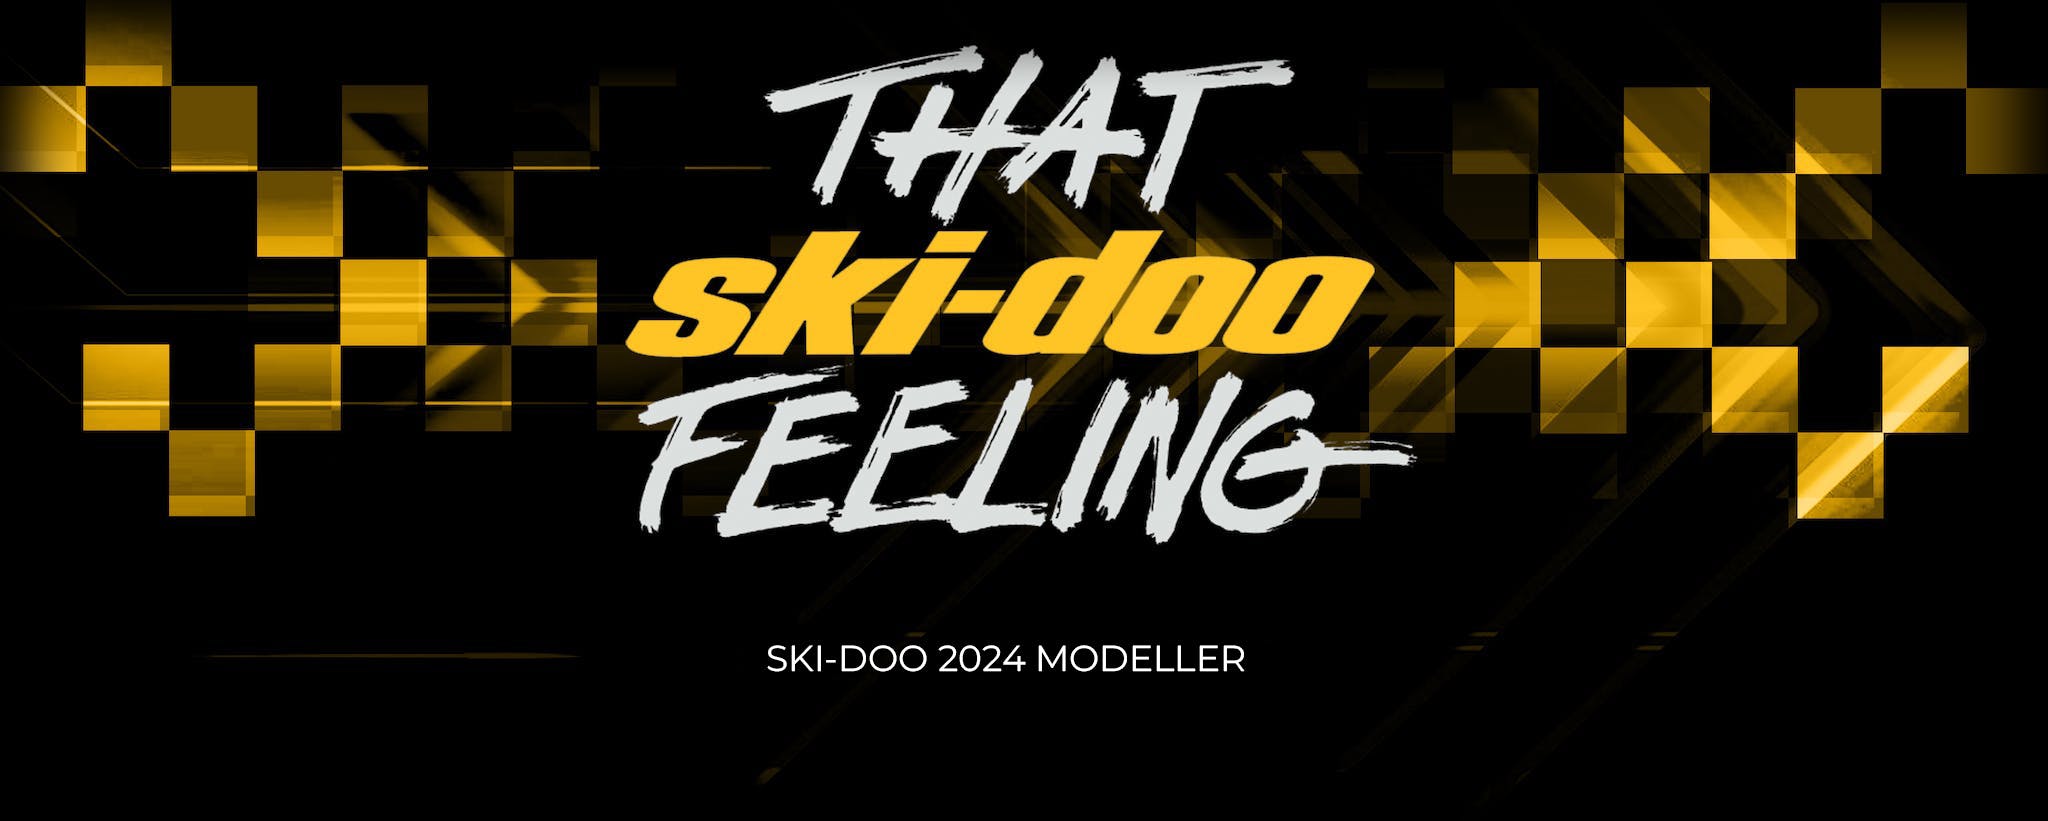 Ski-Doo 2024 modeller banner